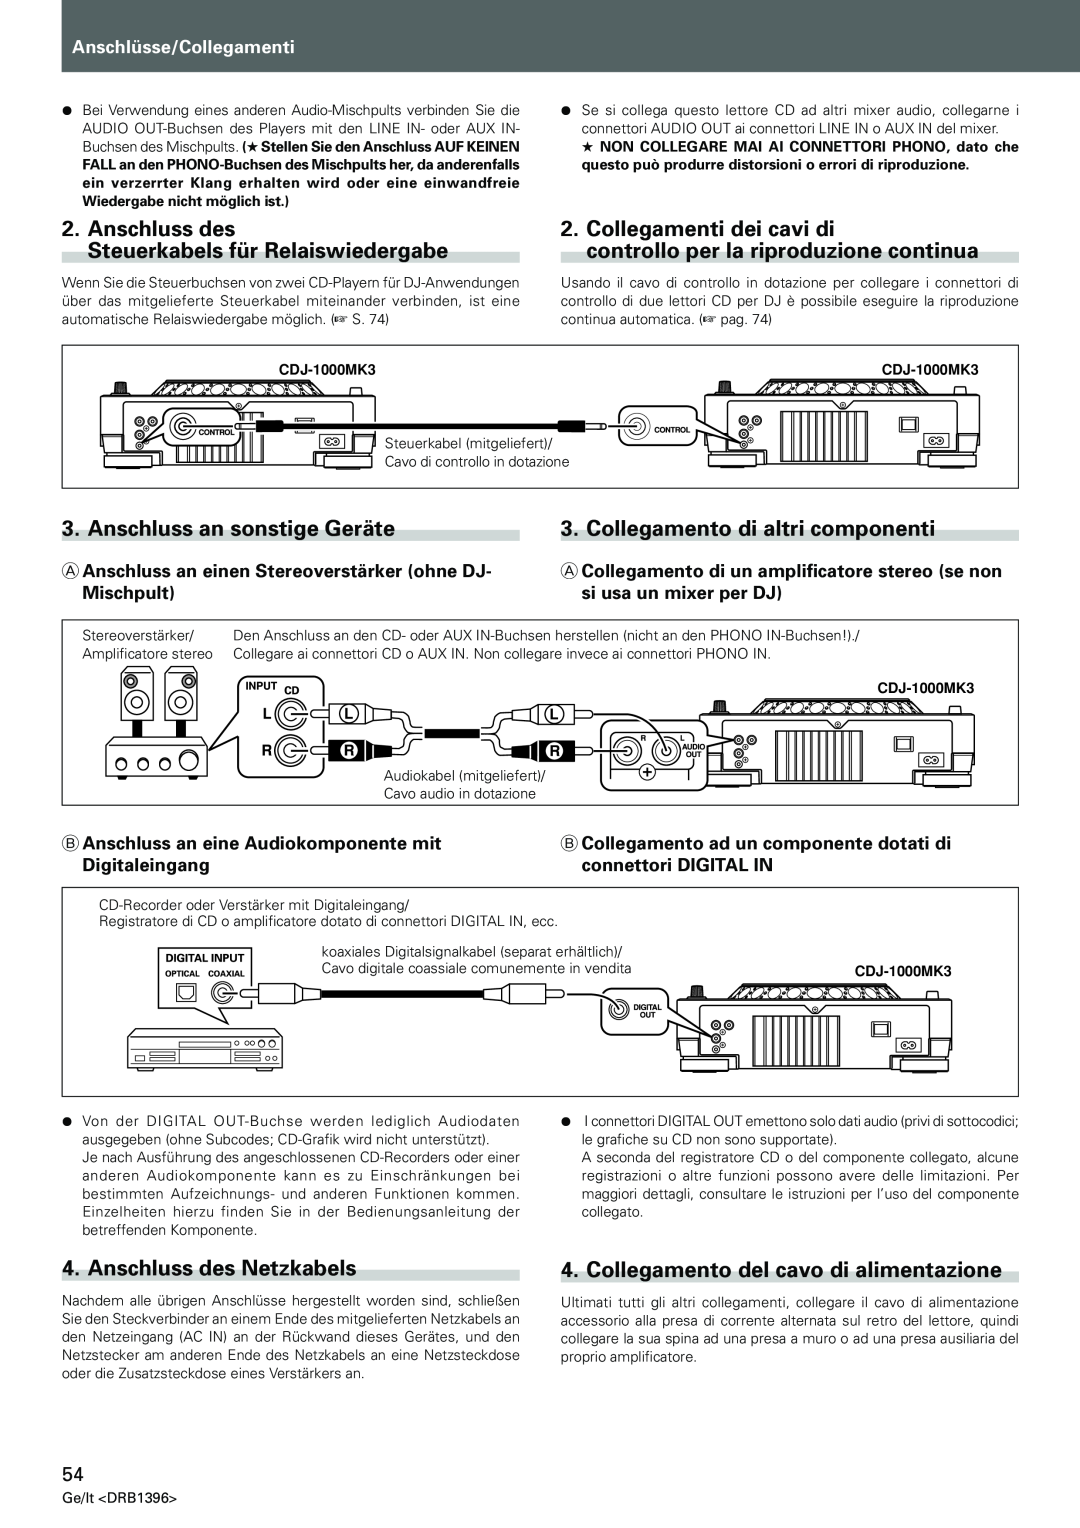 Pioneer CDJ-1000MK3 Anschluss des Steuerkabels für Relaiswiedergabe, Collegamenti dei cavi di, Anschluss des Netzkabels 